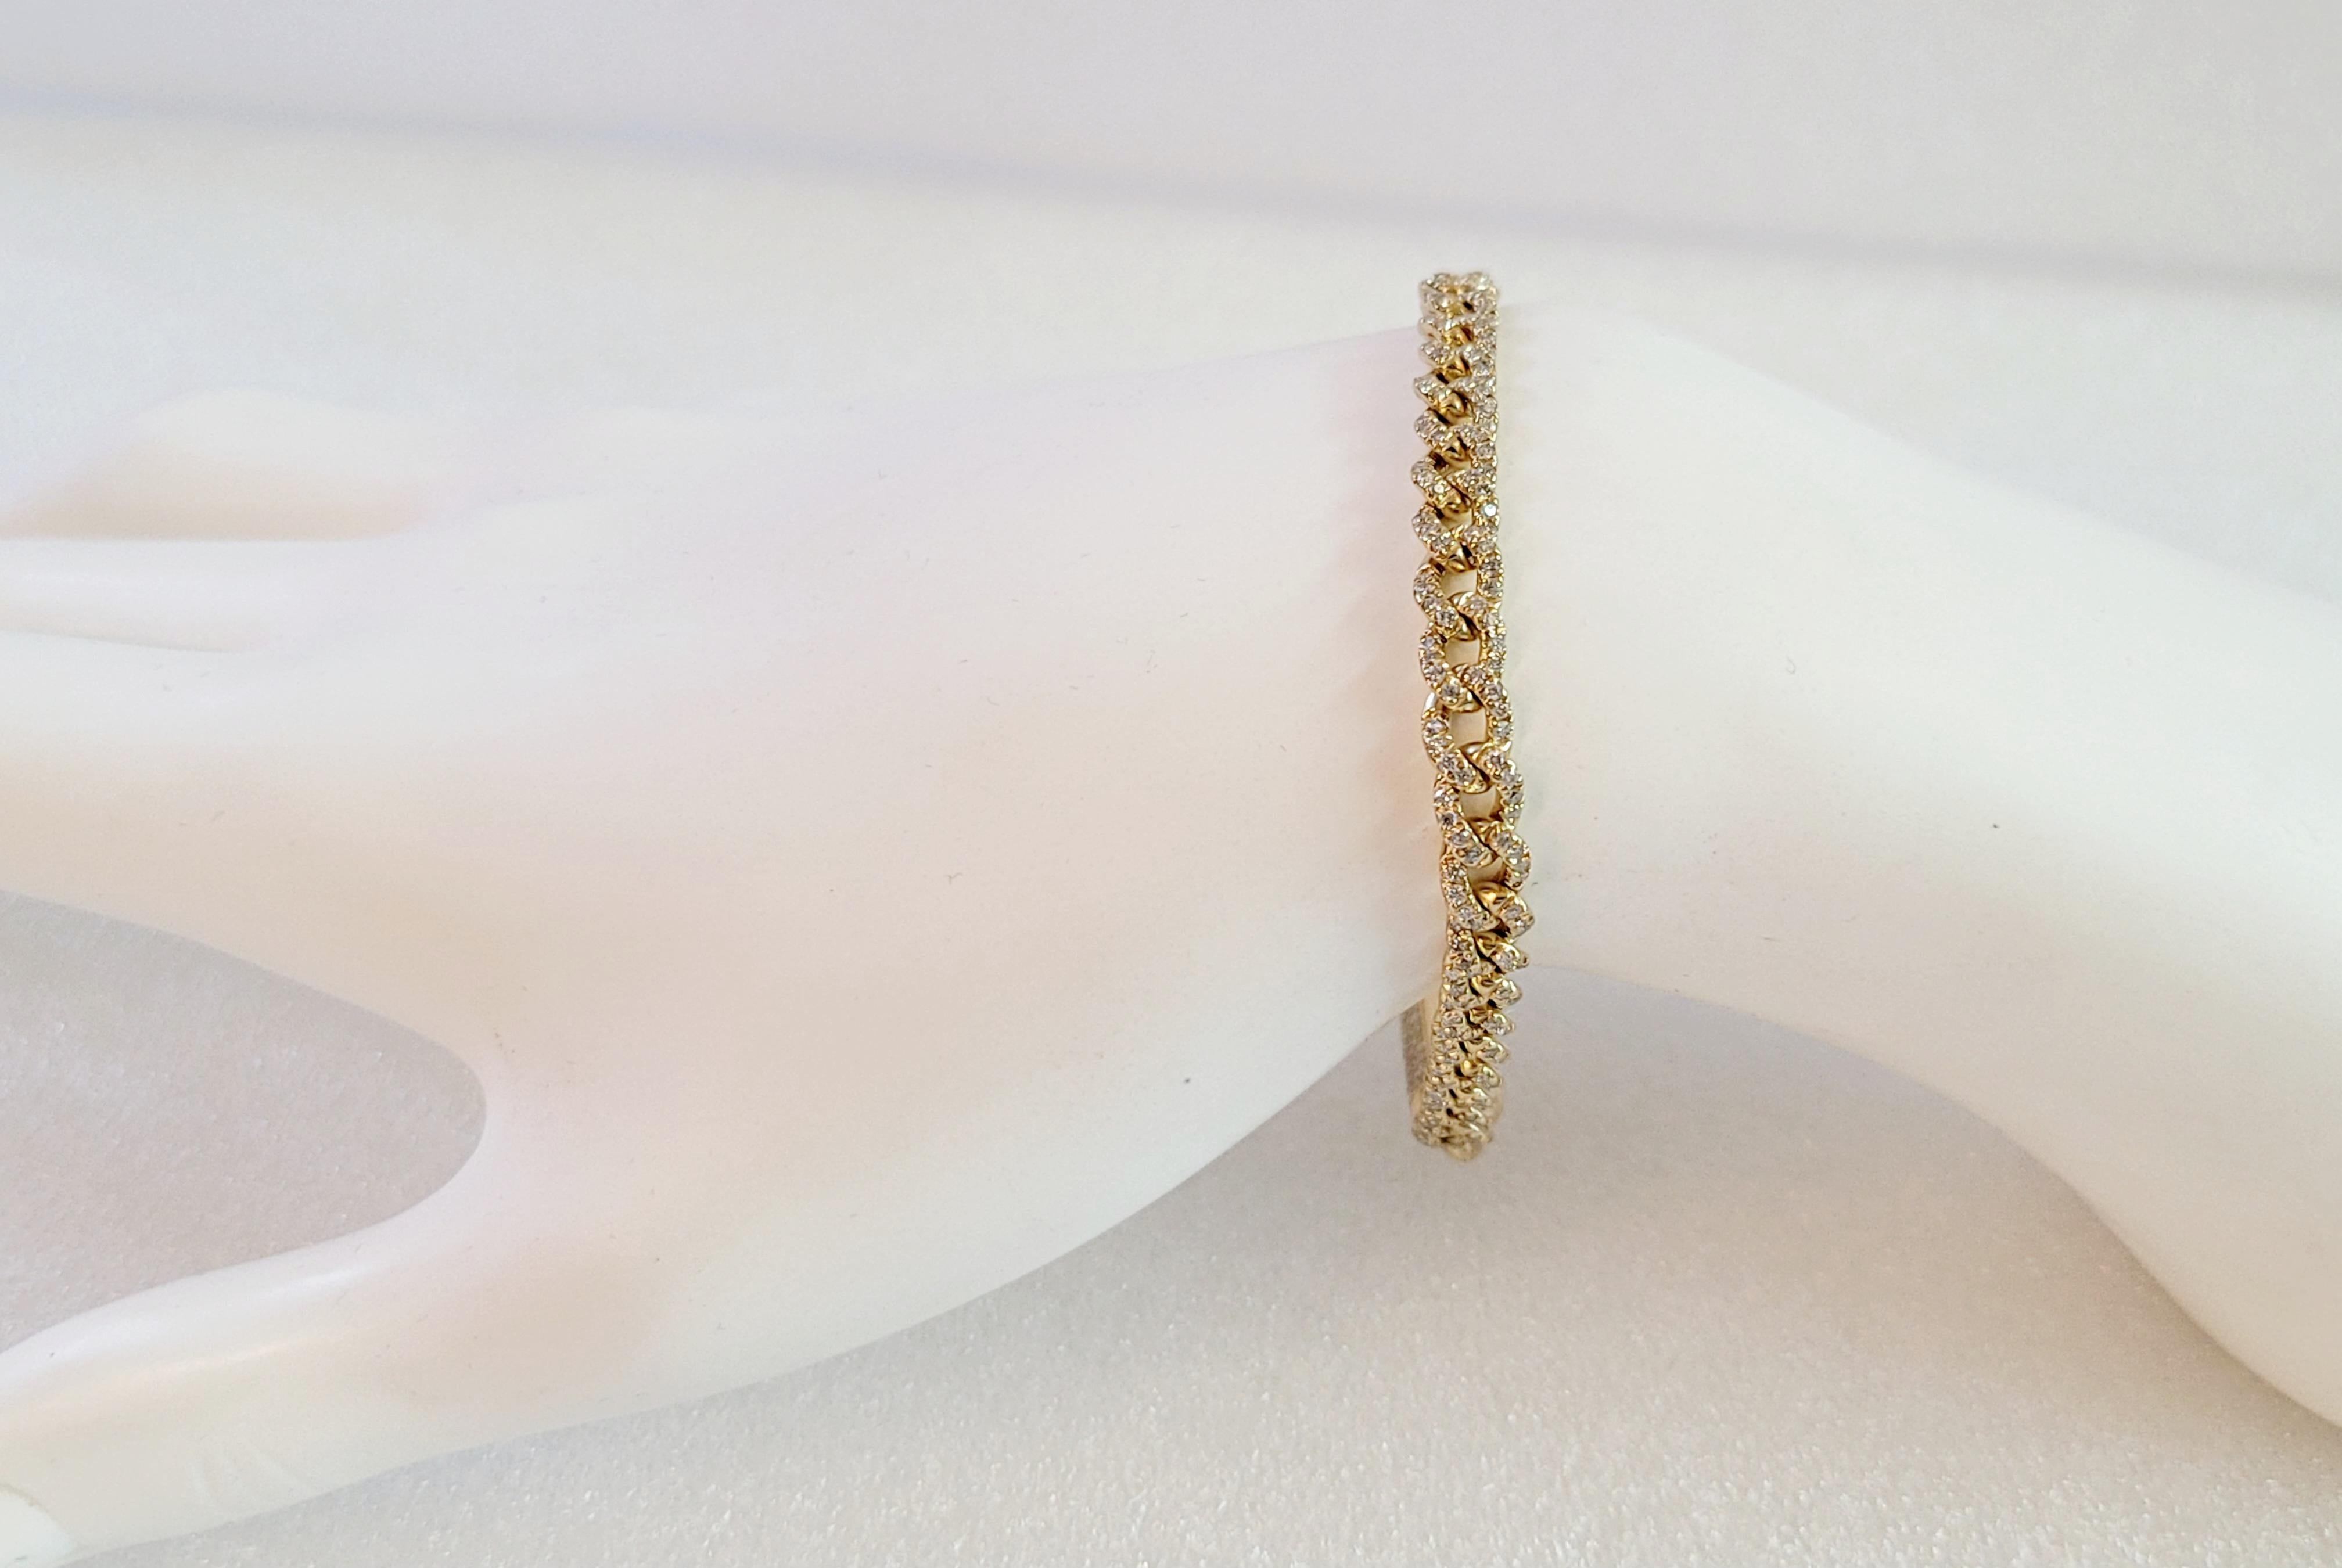 Custom Made Diamond Bracelet
Material: 18K yellow Gold
Length: 7.5